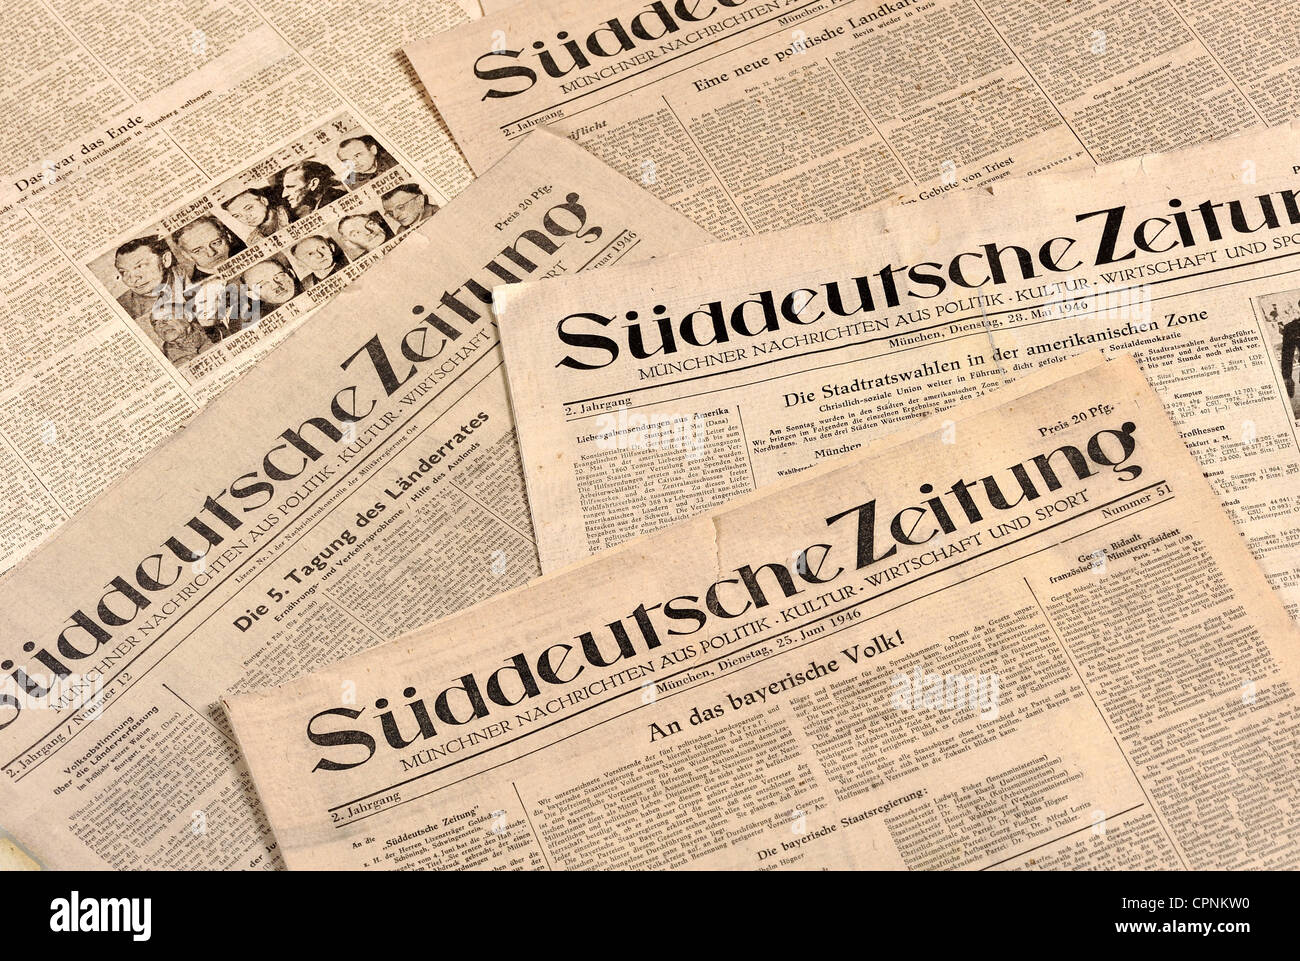 Prensa / medios de comunicación, periódico, 'Sueddeutsche Zeitung', 5  verschiedene Ausgaben vom Febrero bis Oktober 1946, 2do año, fue fundada en  octubre de 1945, en el período de la posguerra se convierte